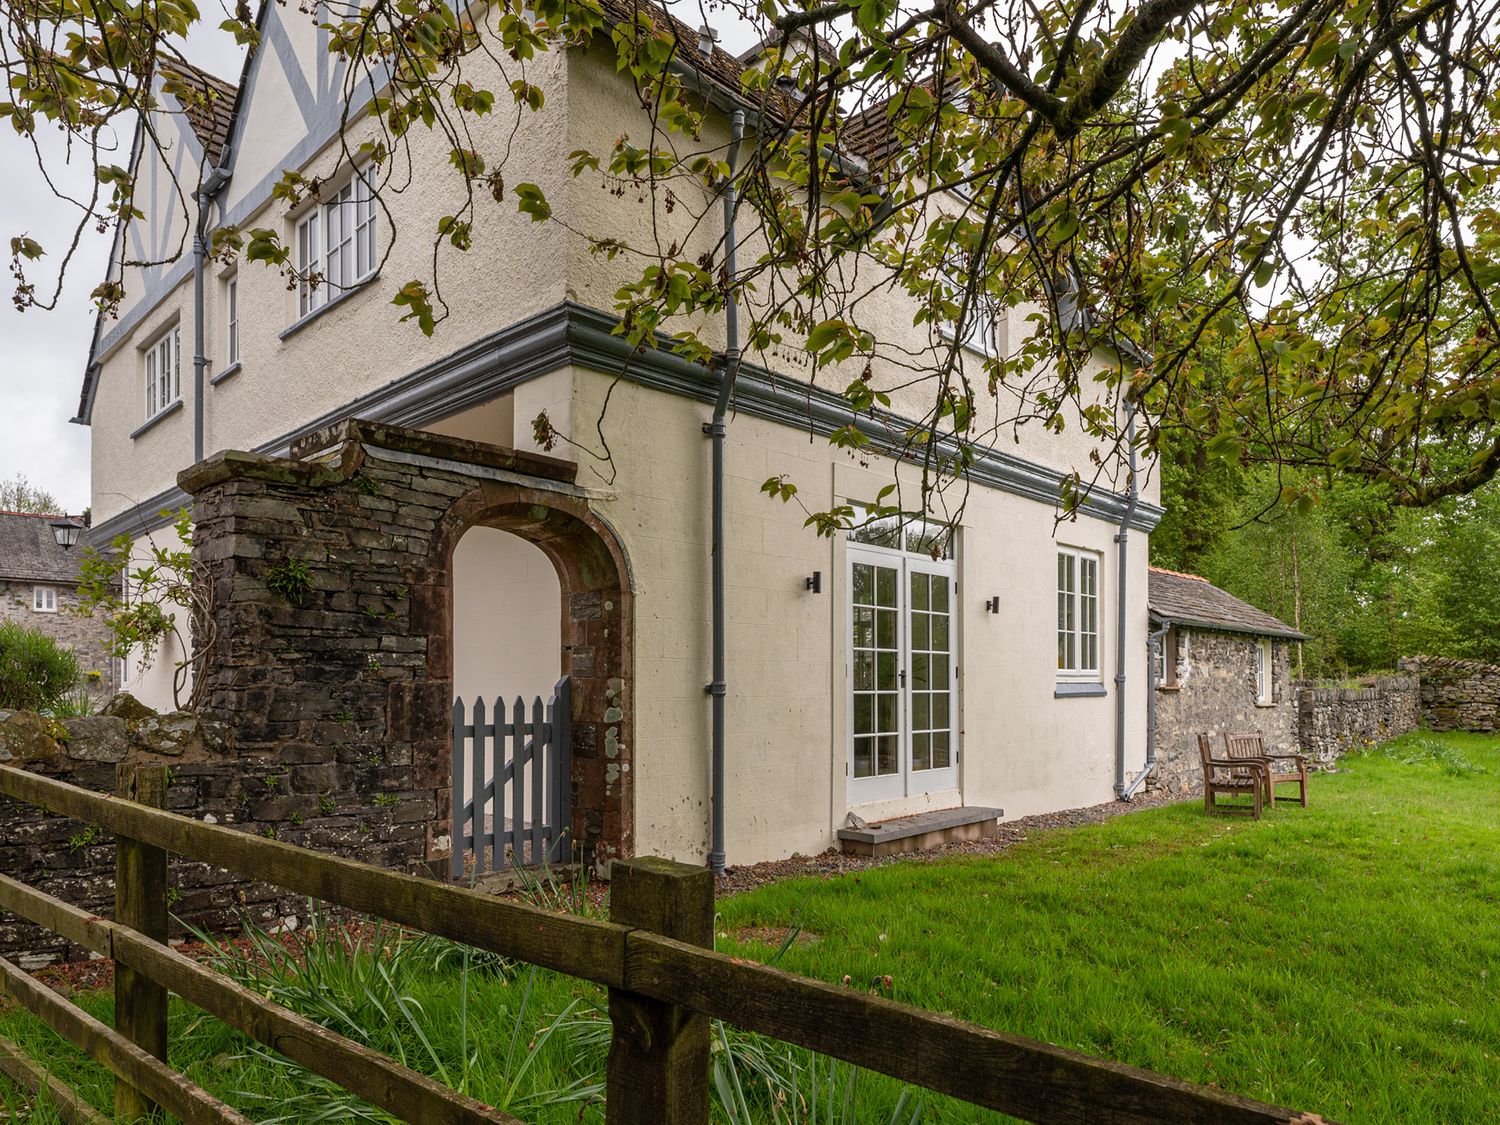 Home Farmhouse - Lake District - 1059253 - photo 1